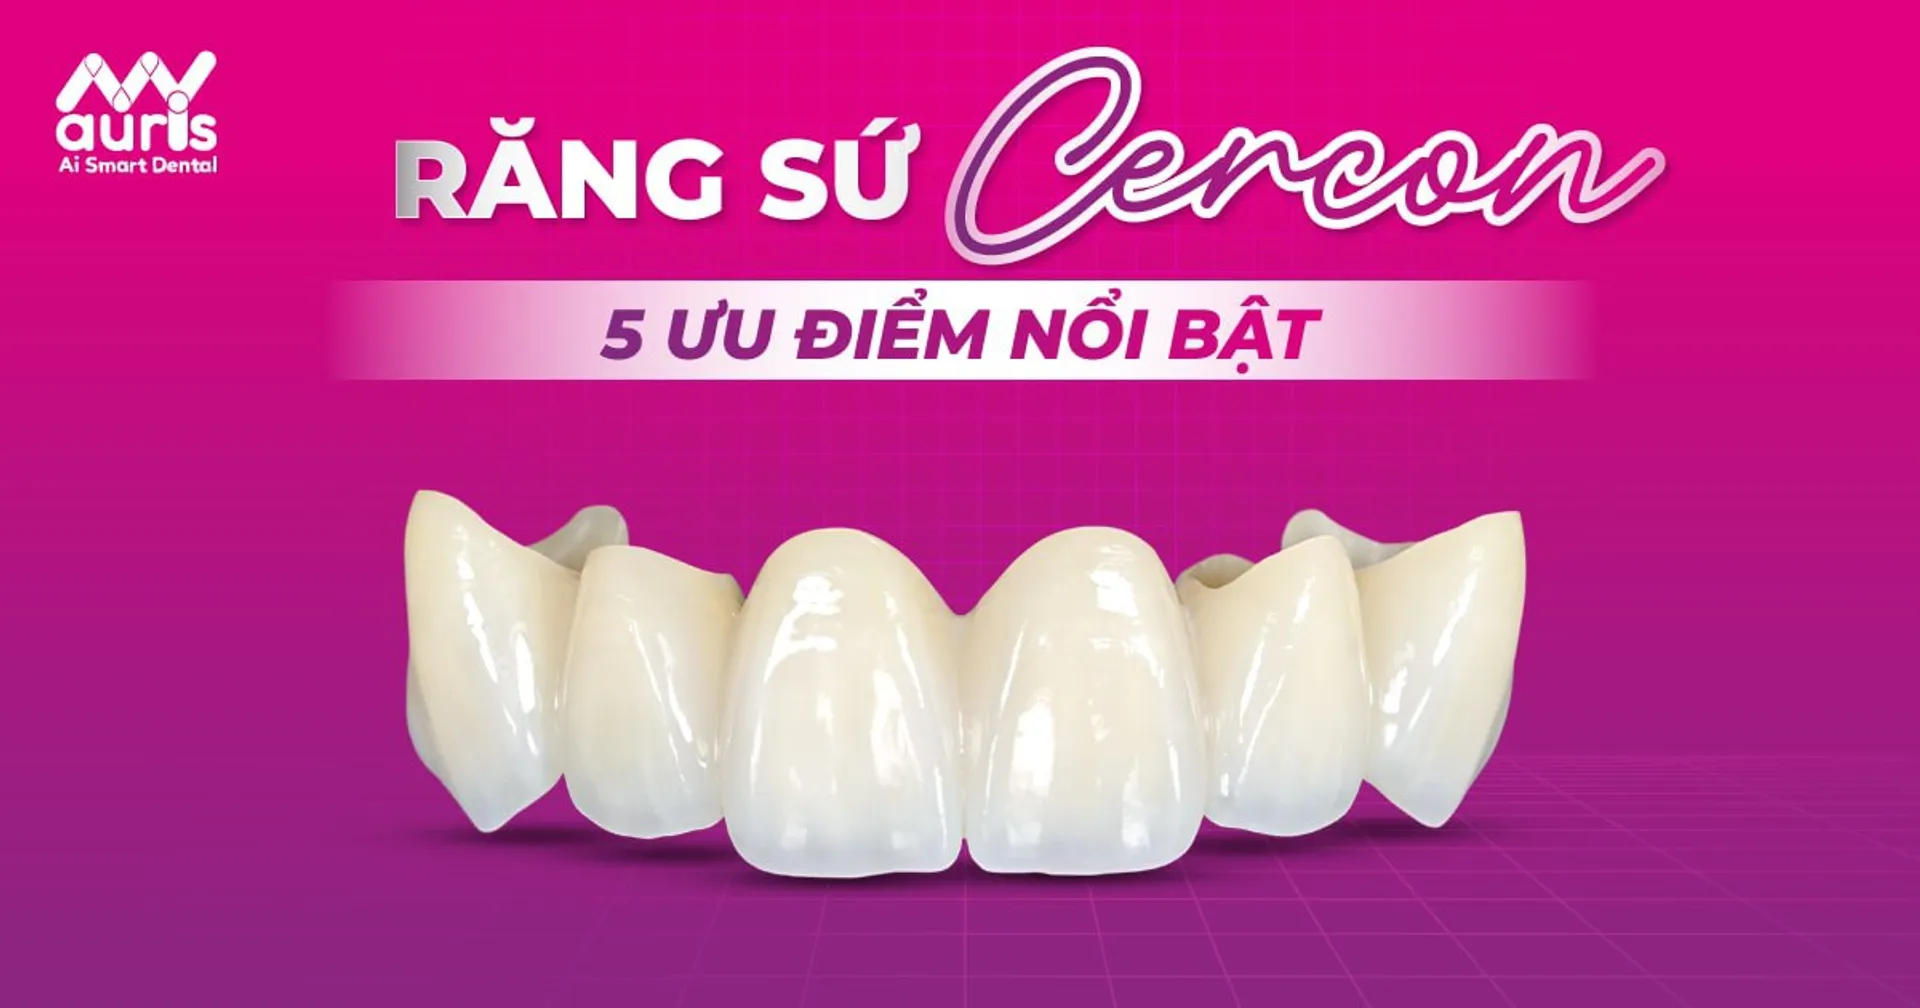 Các loại răng sứ Cercon và 5 ưu điểm nổi bật
https://myauris.vn/cac-loai-rang-su-cercon-va-5-uu-diem-noi-bat
Các loại răng sứ Cercon hiện có trong nha khoa là răng sứ Cercon Zirconia và răng sứ Cercon HT. Cả hai loại đều có khả năng phục hình và cải thiện thẩm mỹ tốt hiện nay.